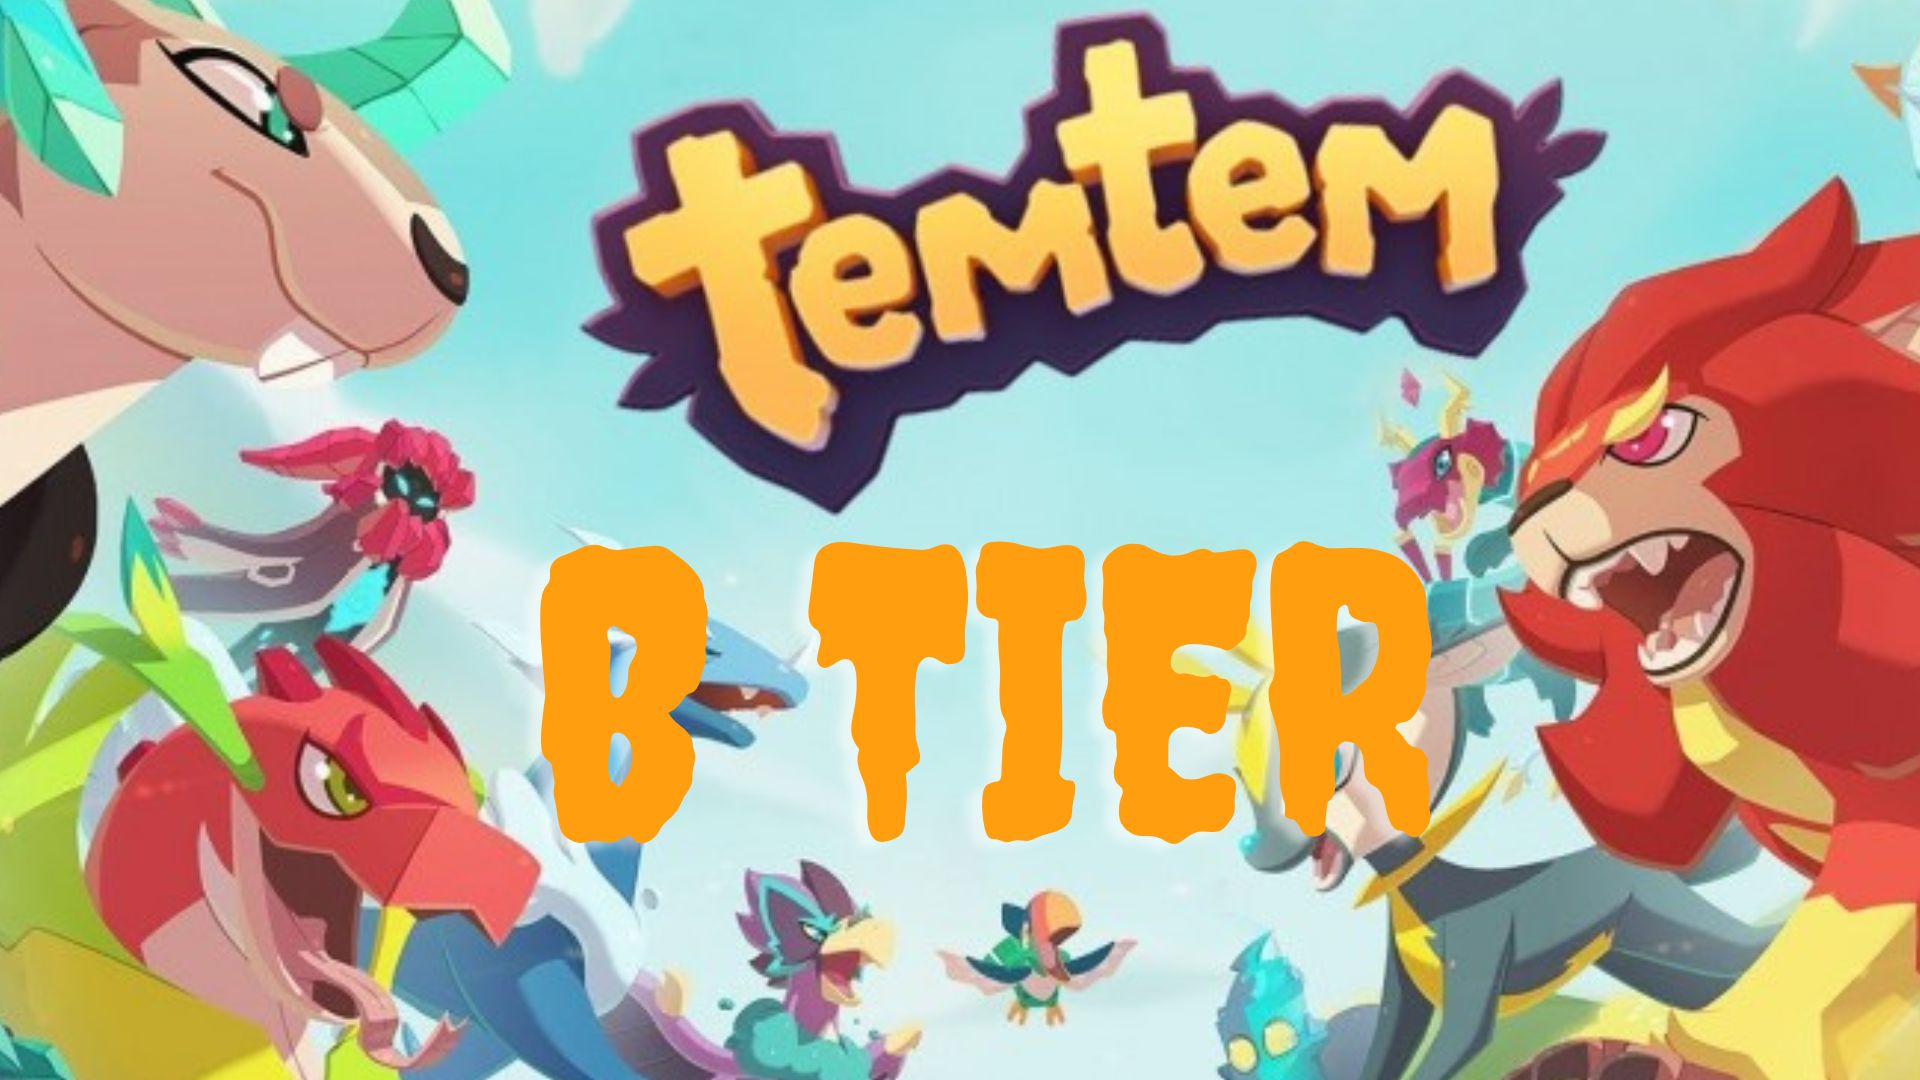 Average characters of Temtem